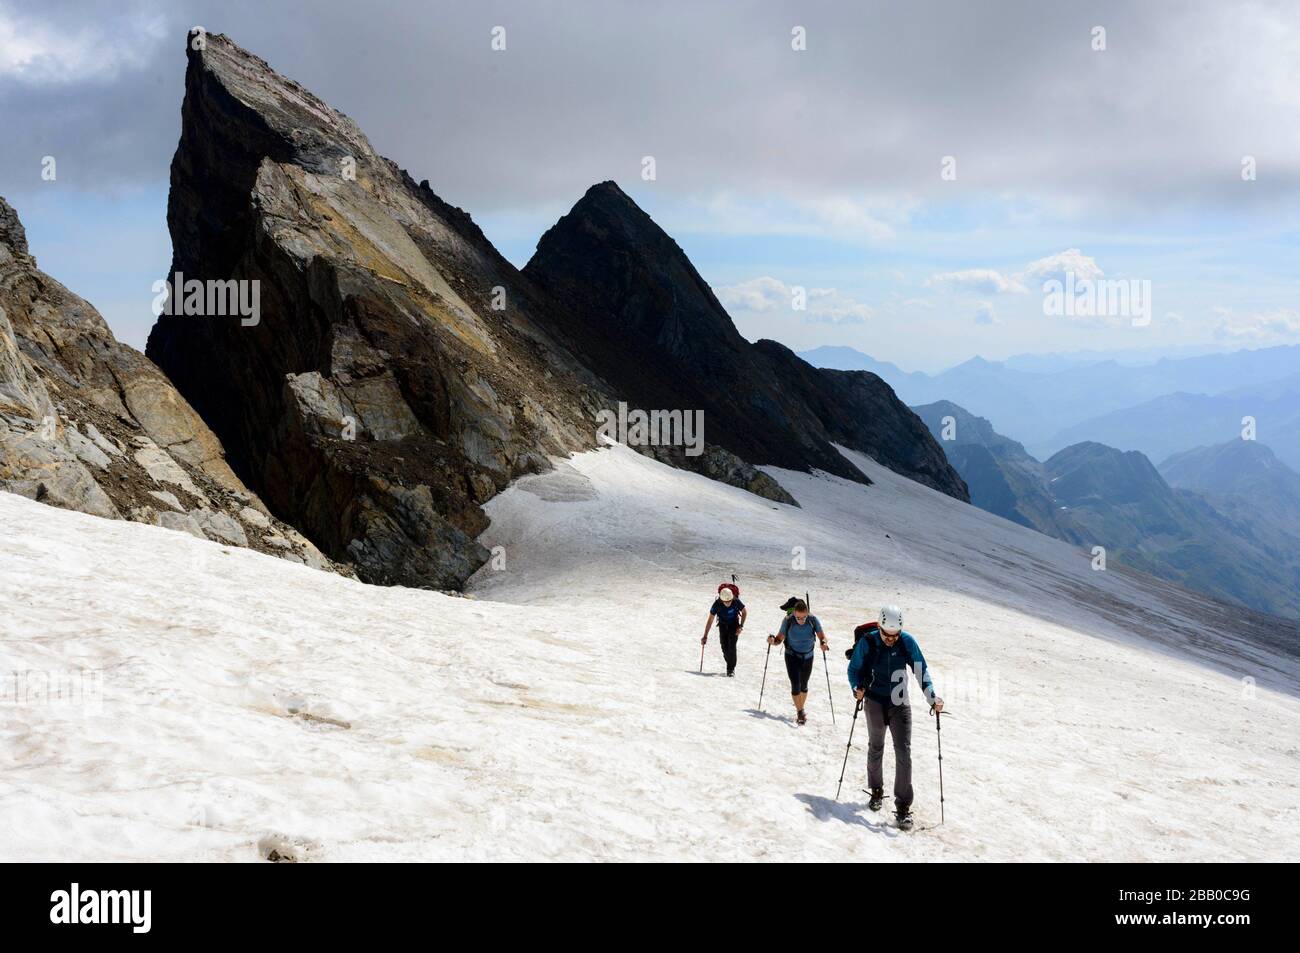 Alpinistes sur le glacier d'Ossoue, Pyrénées centrales, France Banque D'Images